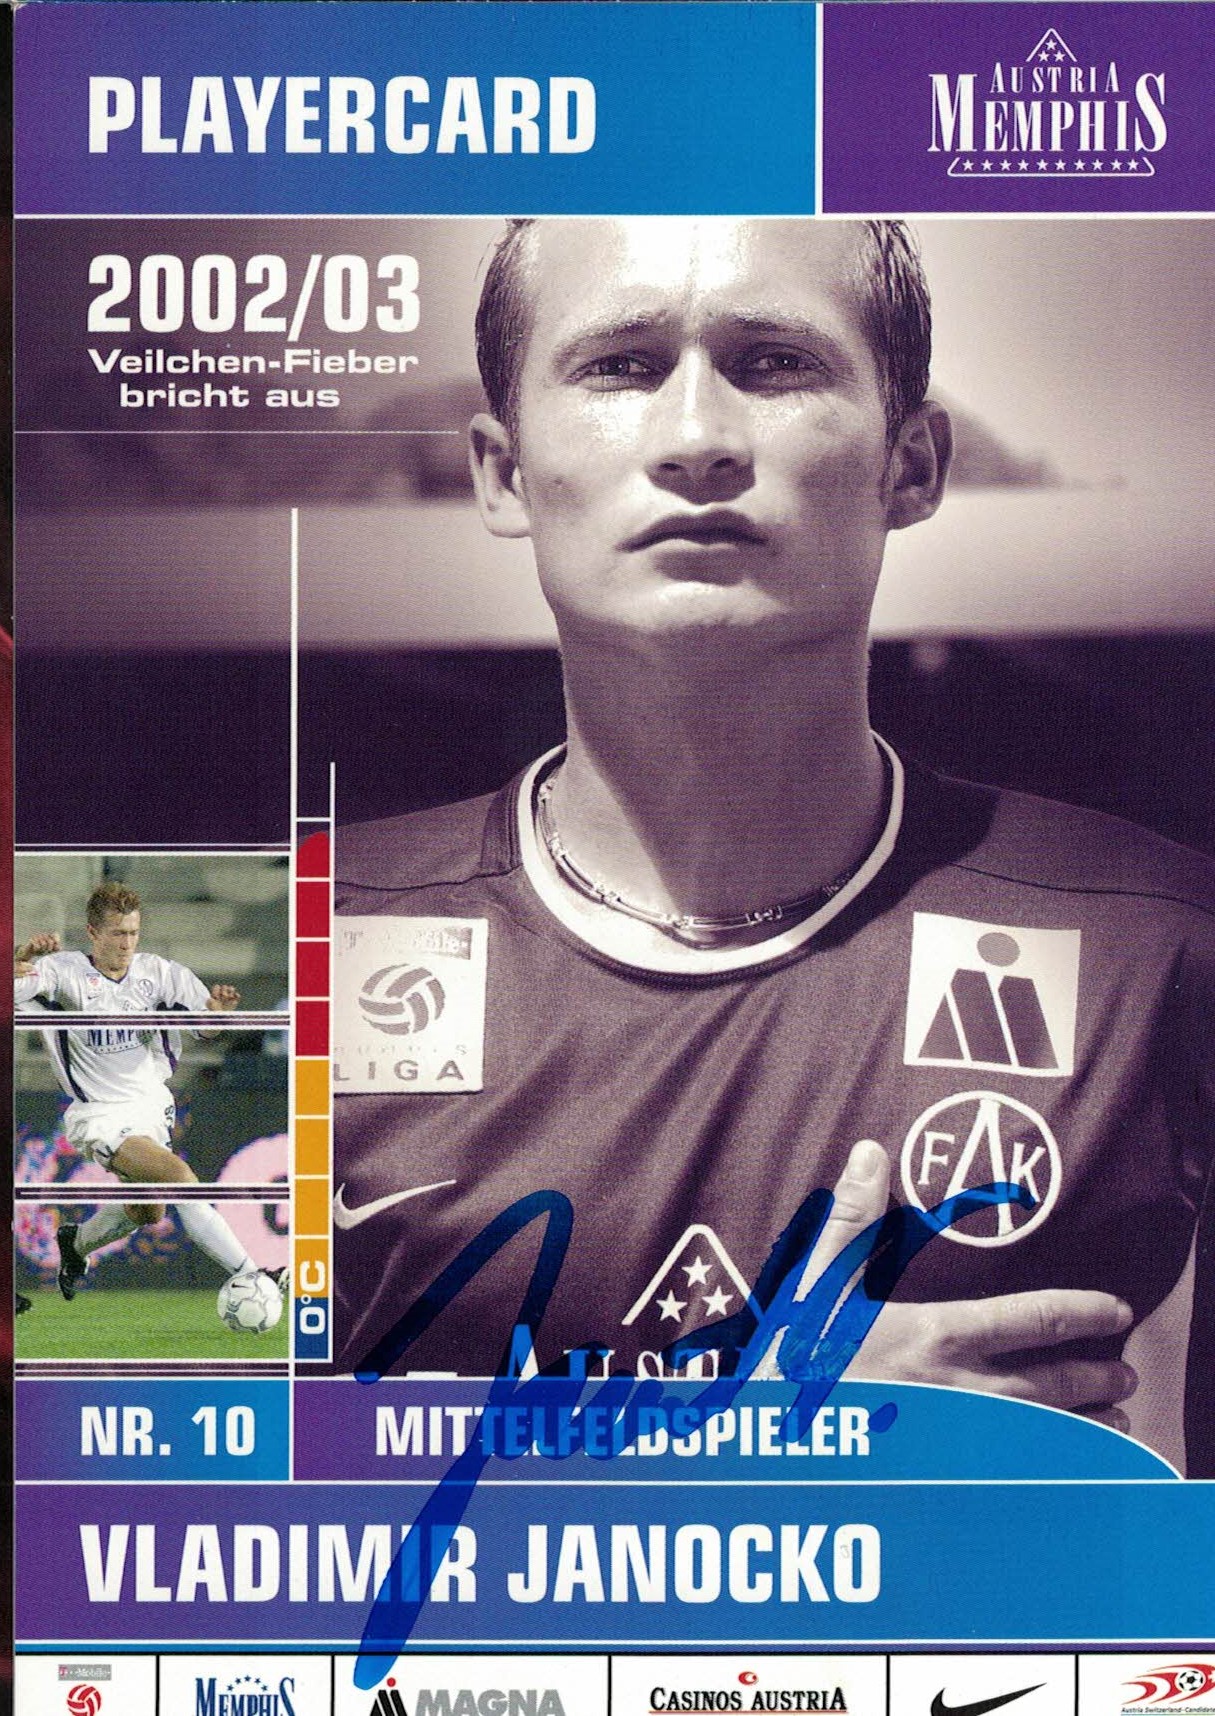 Vladimir Janocko Austria Memphis Wien 2002/03 Podpisova karta autogram